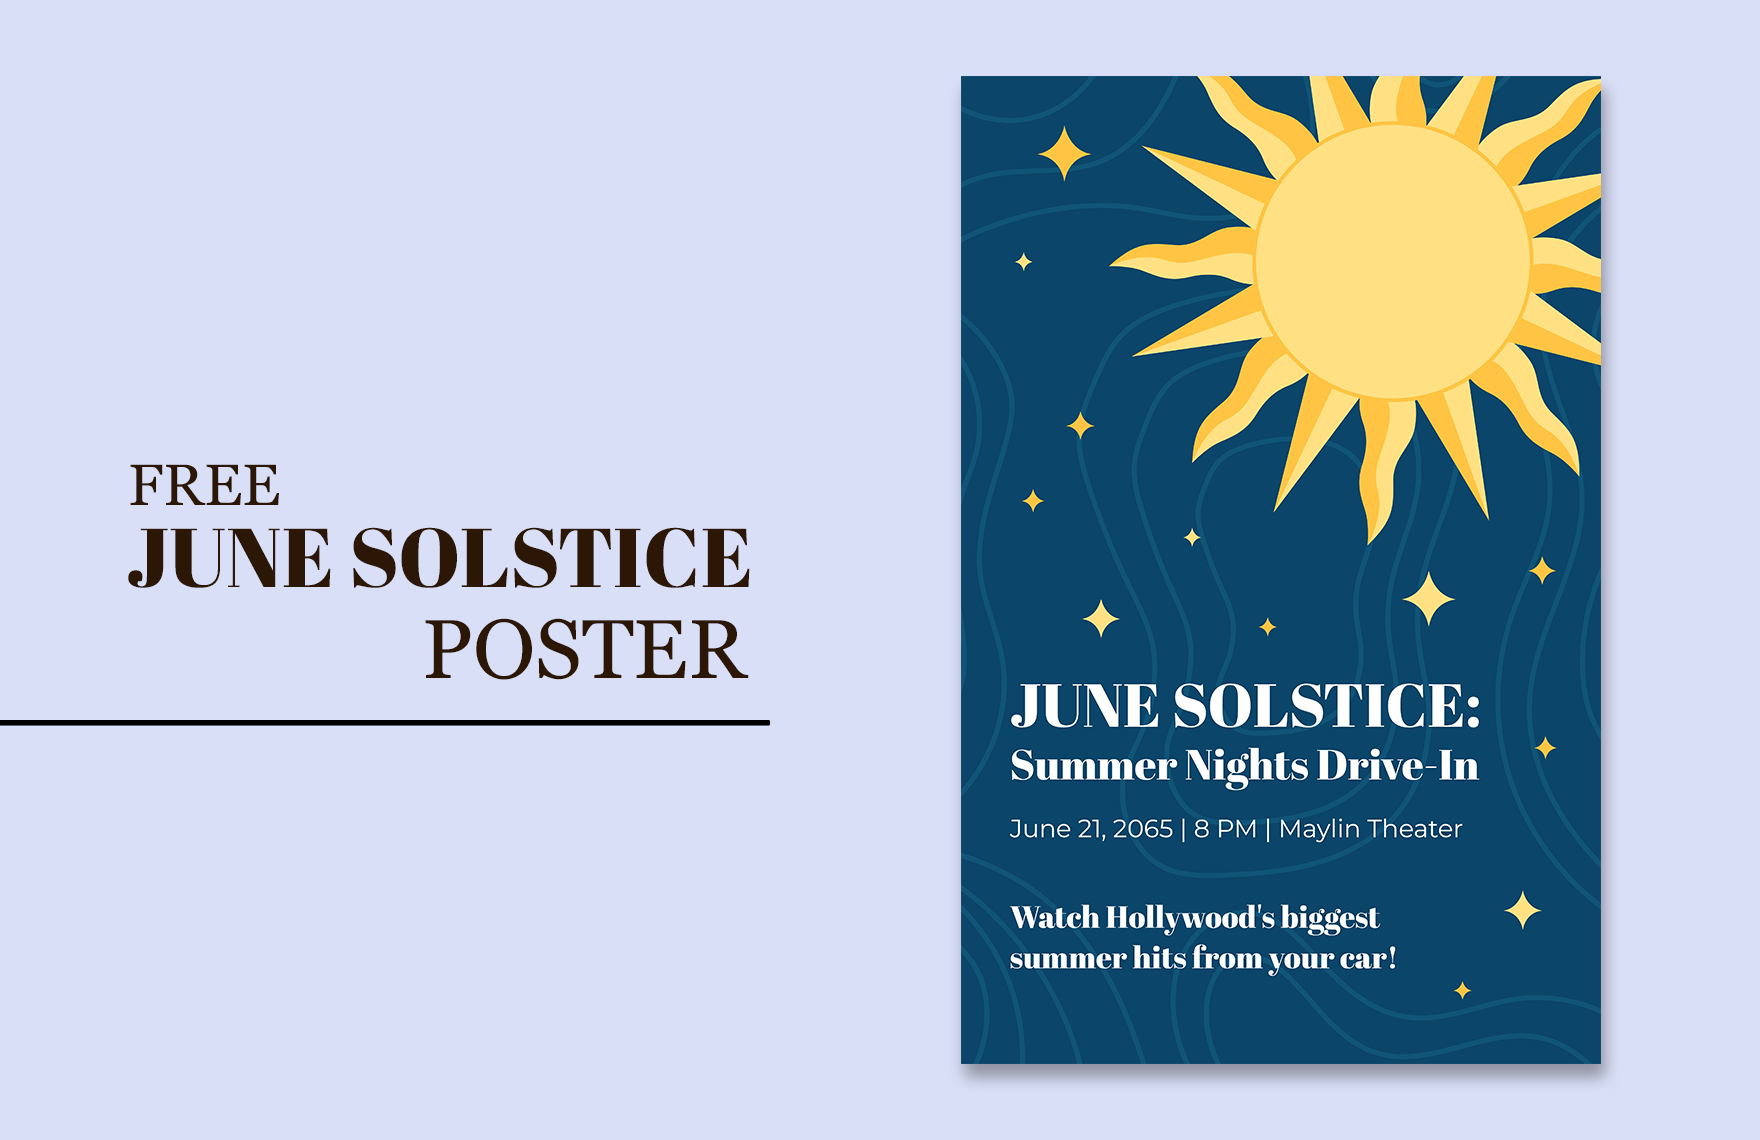 Free June Solstice Poster